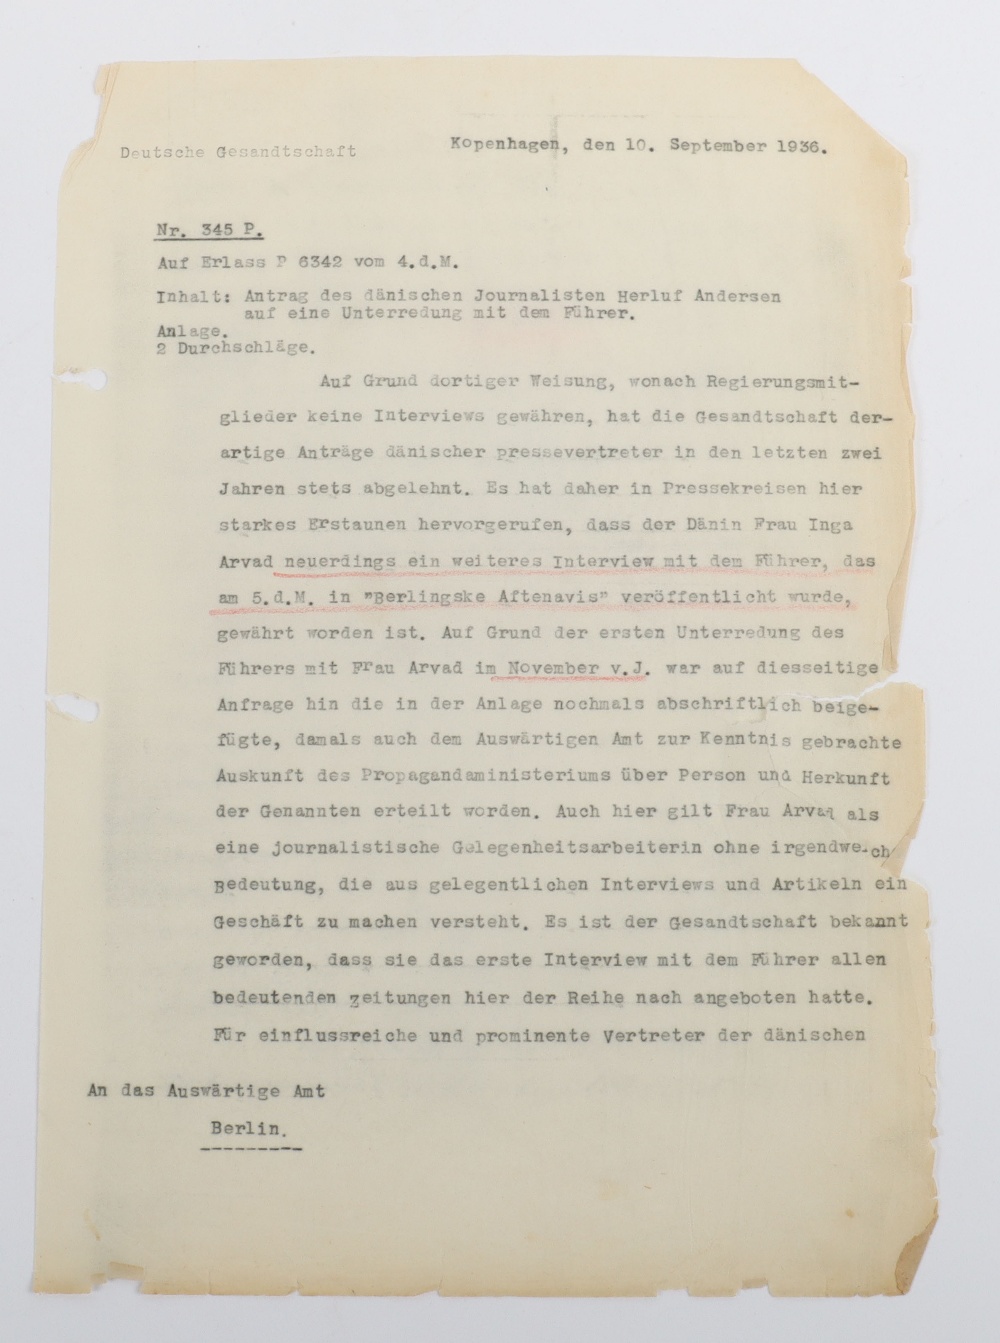 Interesting Third Reich Documents Relating to the Danish Journalist and Hollywood Gossip Columnist I - Bild 19 aus 47